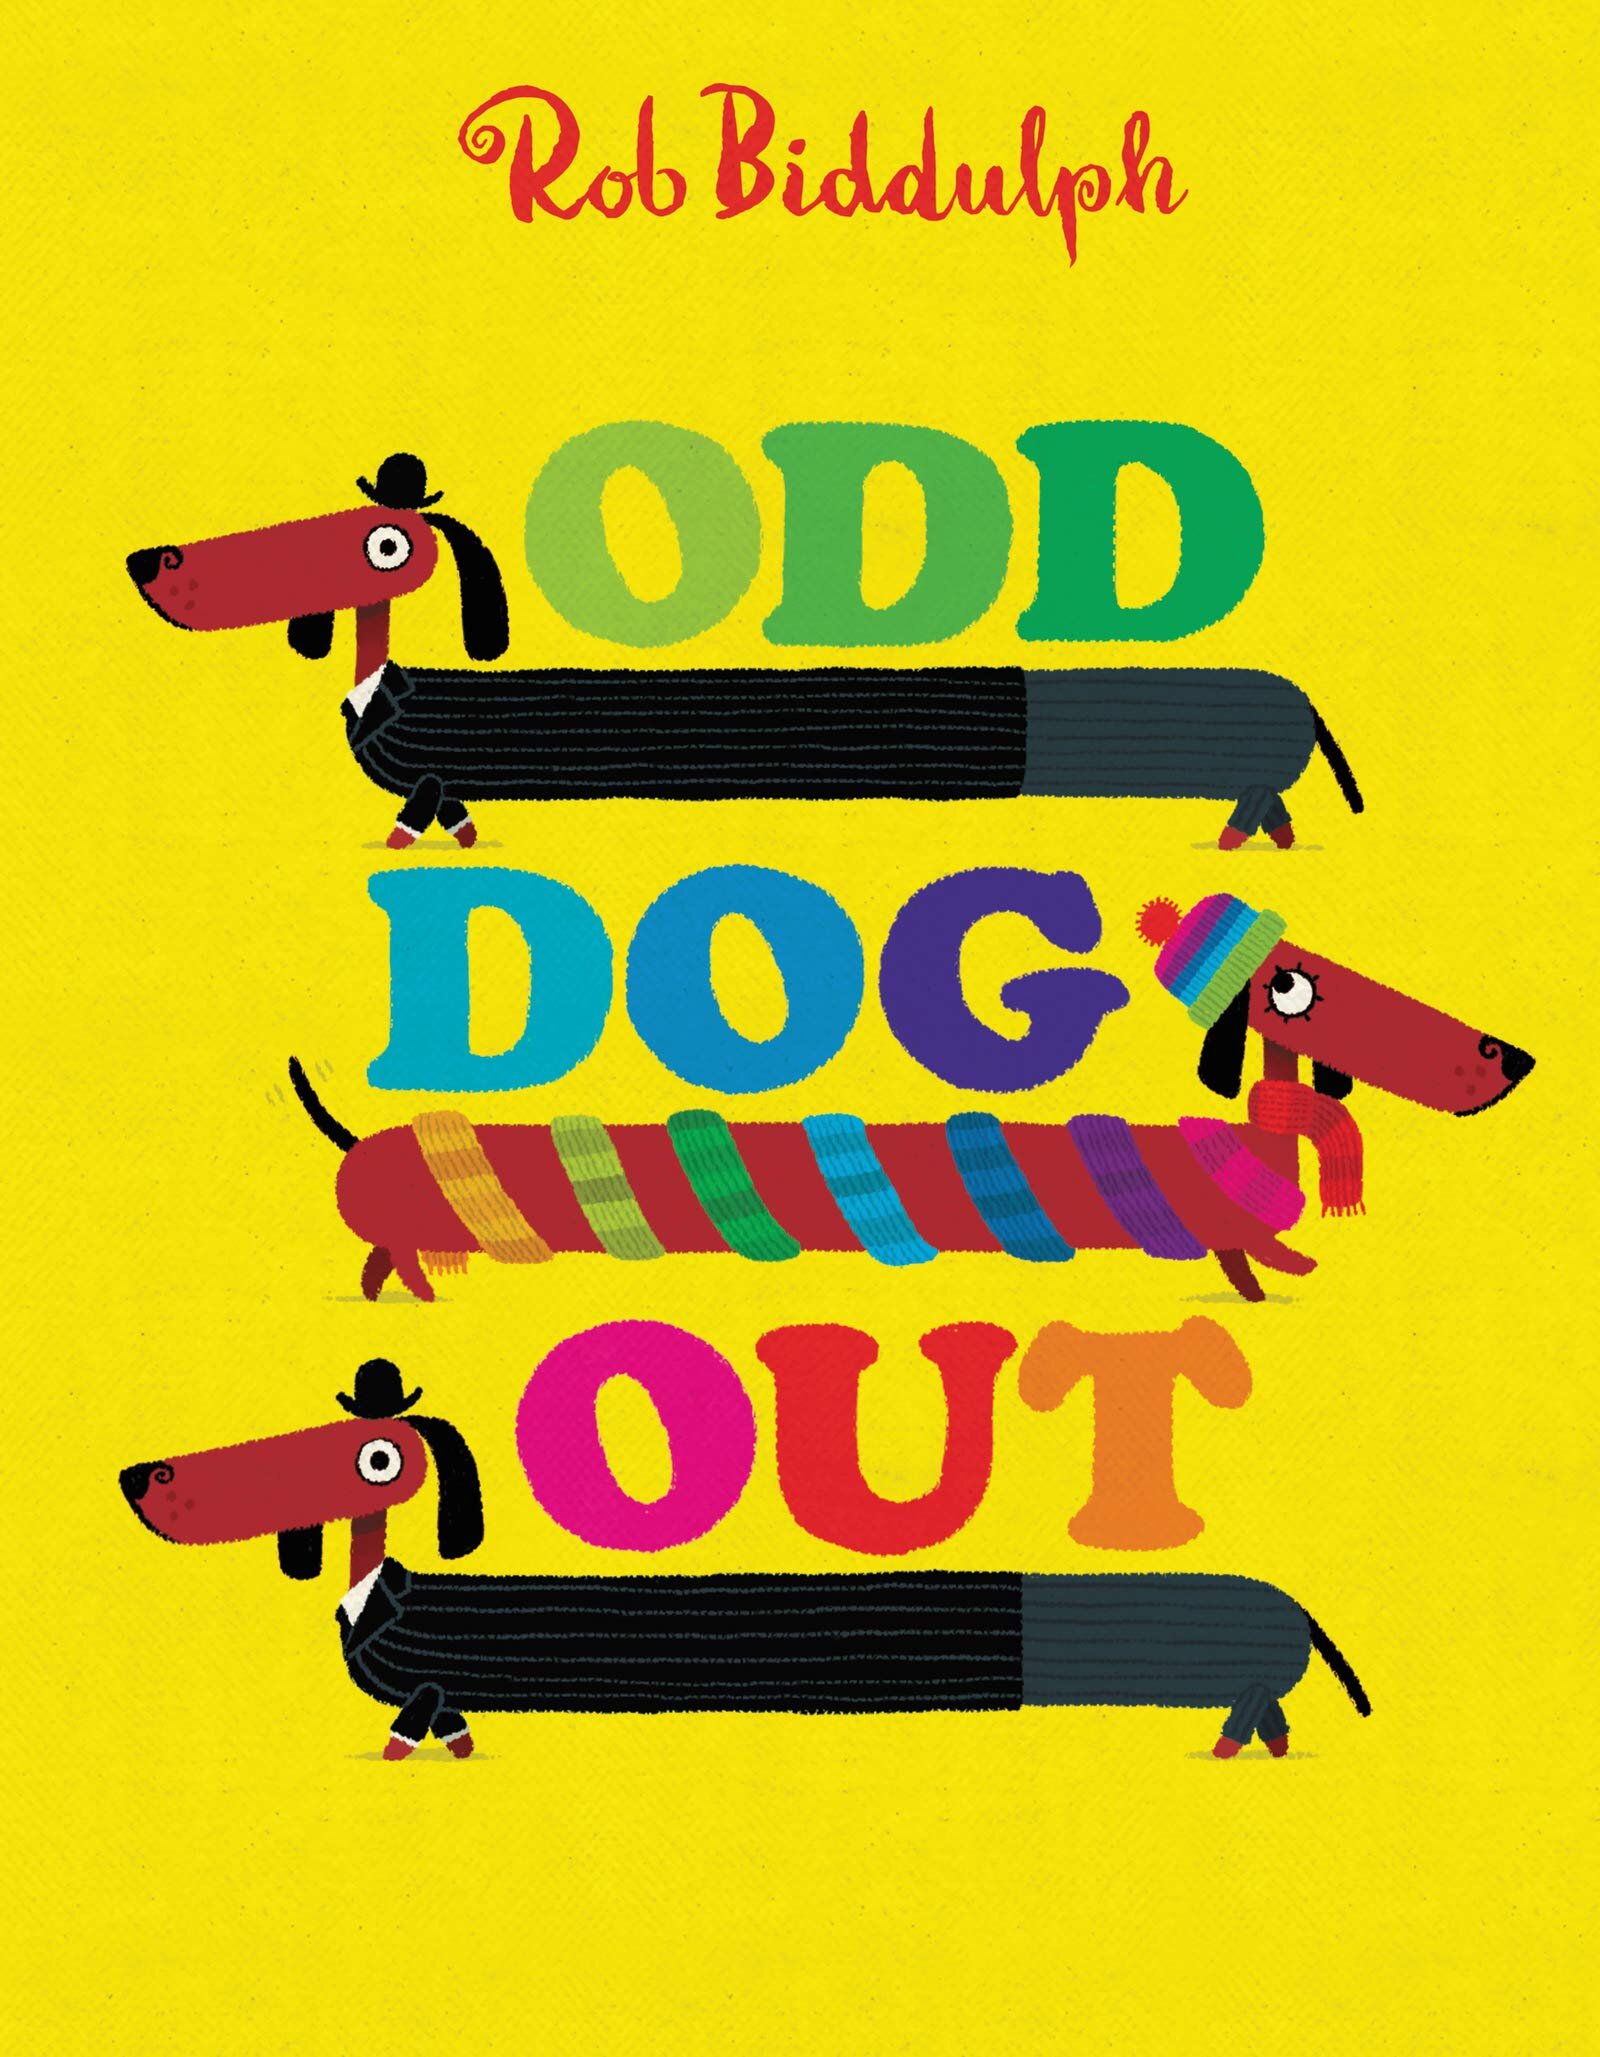 Odd Dog Out USA edition